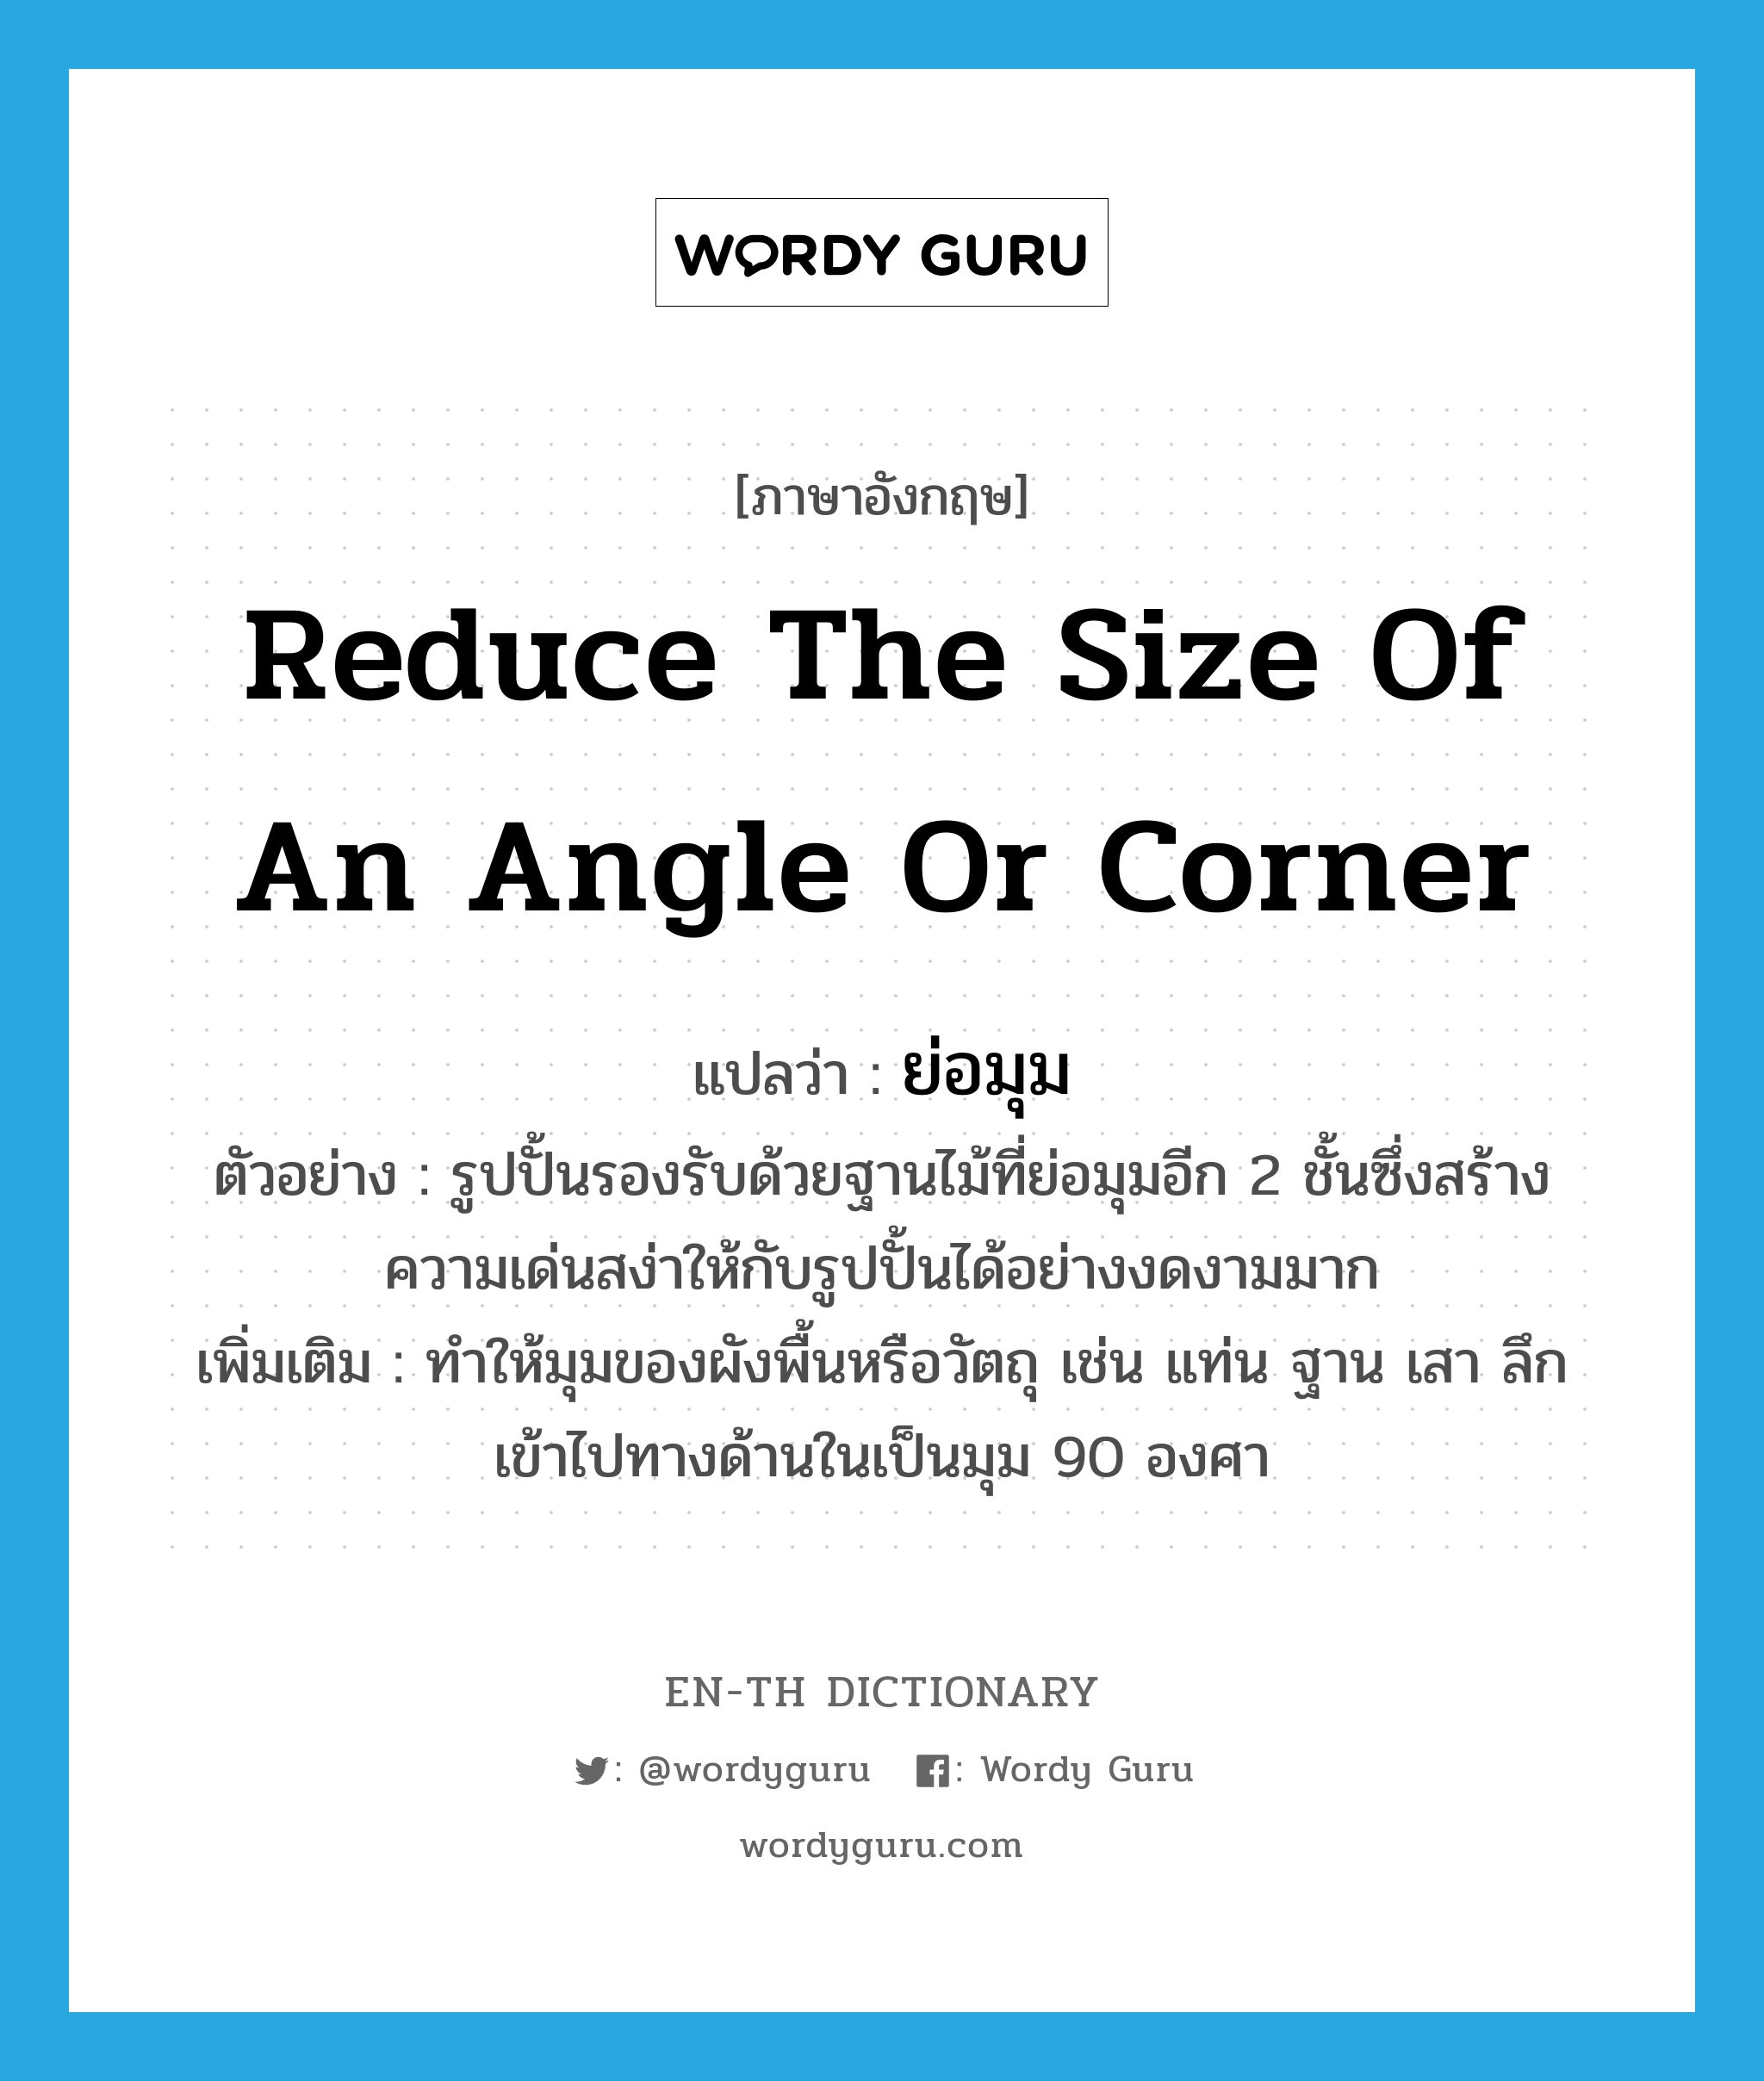 reduce the size of an angle or corner แปลว่า?, คำศัพท์ภาษาอังกฤษ reduce the size of an angle or corner แปลว่า ย่อมุม ประเภท V ตัวอย่าง รูปปั้นรองรับด้วยฐานไม้ที่ย่อมุมอีก 2 ชั้นซึ่งสร้างความเด่นสง่าให้กับรูปปั้นได้อย่างงดงามมาก เพิ่มเติม ทำให้มุมของผังพื้นหรือวัตถุ เช่น แท่น ฐาน เสา ลึกเข้าไปทางด้านในเป็นมุม 90 องศา หมวด V